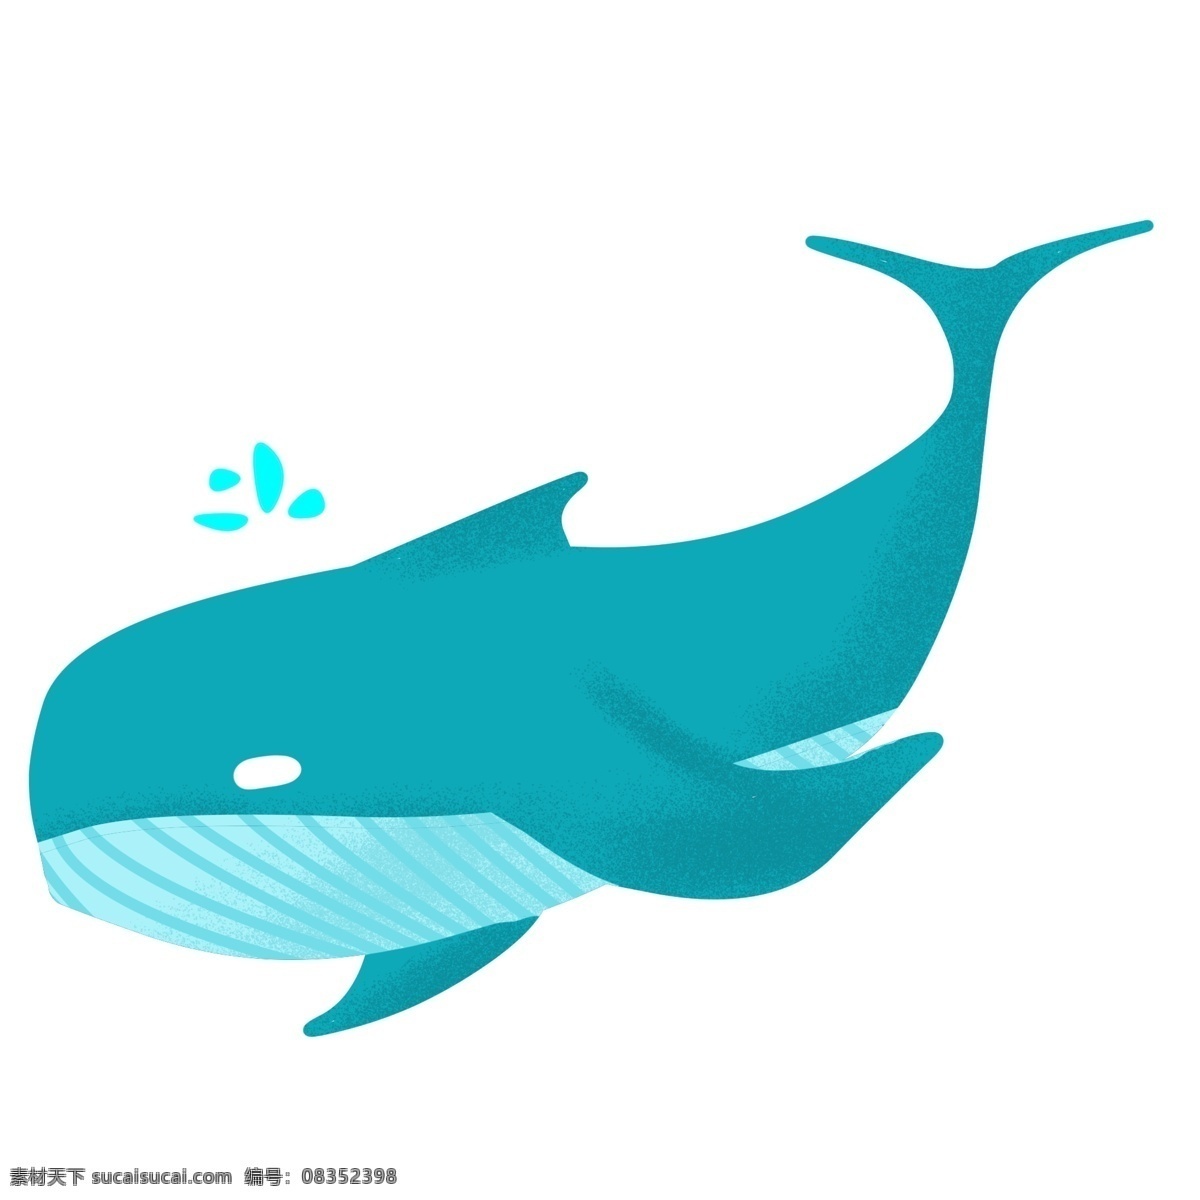 绿色 卡通 鲸鱼 插画 卡通鲸鱼 手绘鲸鱼 海洋动物 海洋生物 水生动物 绿色鲸鱼插画 喷水的鲸鱼 蓝色的水滴